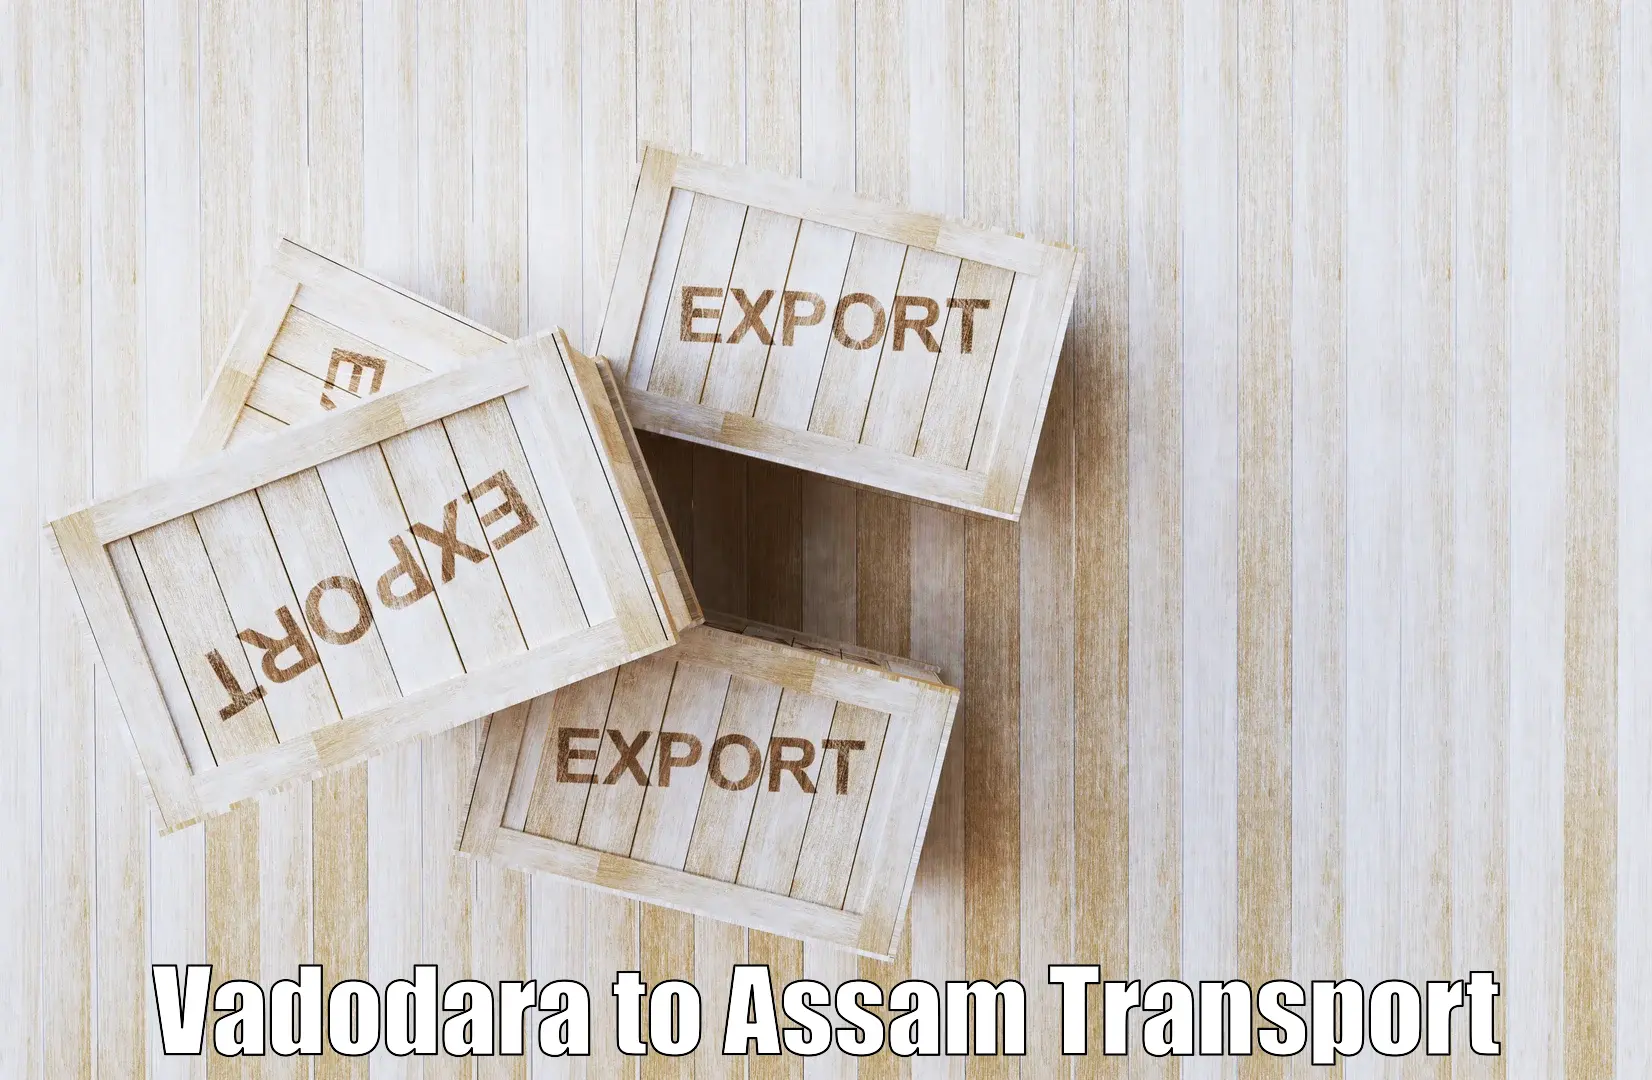 Furniture transport service Vadodara to Hailakandi